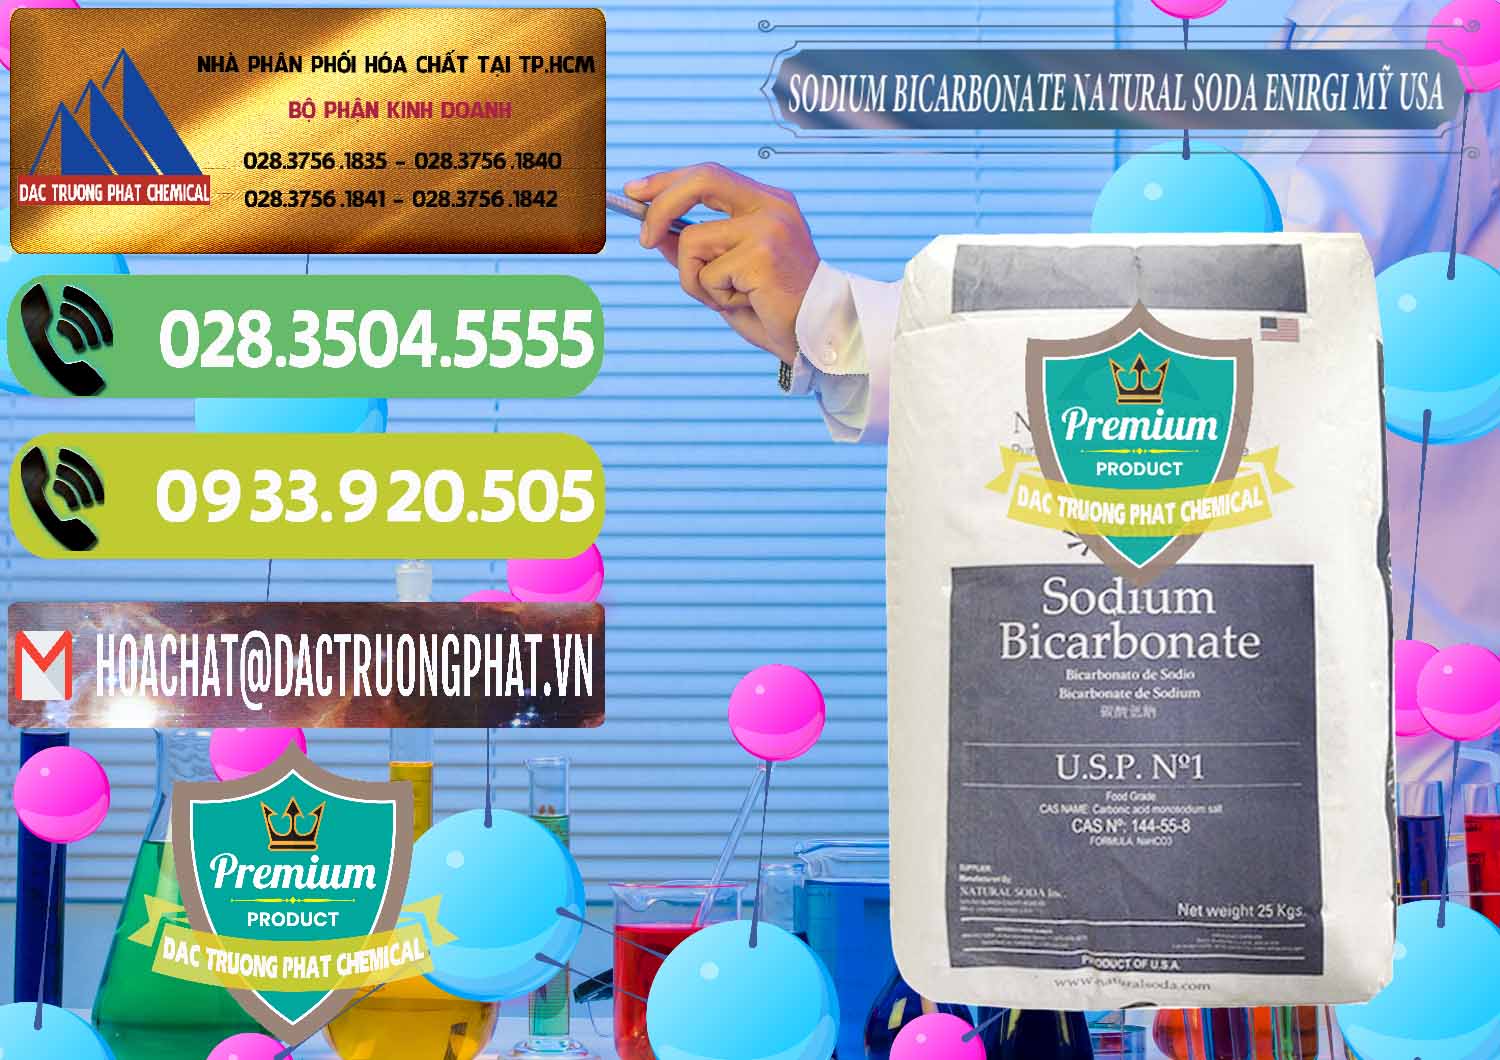 Cty bán & phân phối Sodium Bicarbonate – Bicar NaHCO3 Food Grade Natural Soda Enirgi Mỹ USA - 0257 - Nơi phân phối và bán hóa chất tại TP.HCM - hoachatmientay.vn